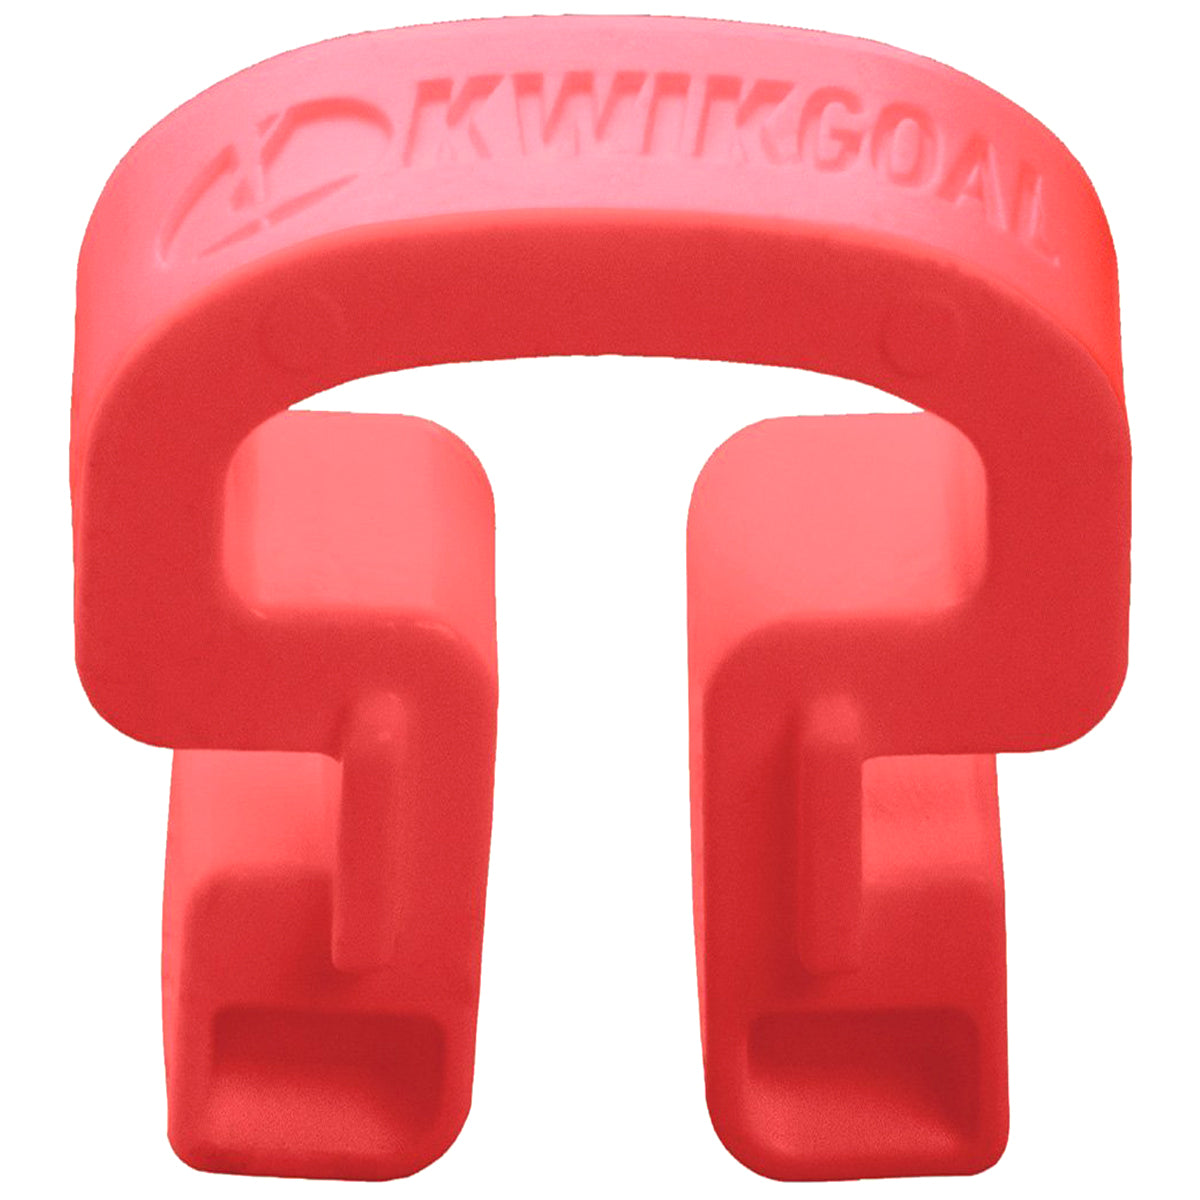 Kwikgoal Kwik Lock Net Clips - 100 Pack | 10B31 Goal accessories Kwikgoal Red 